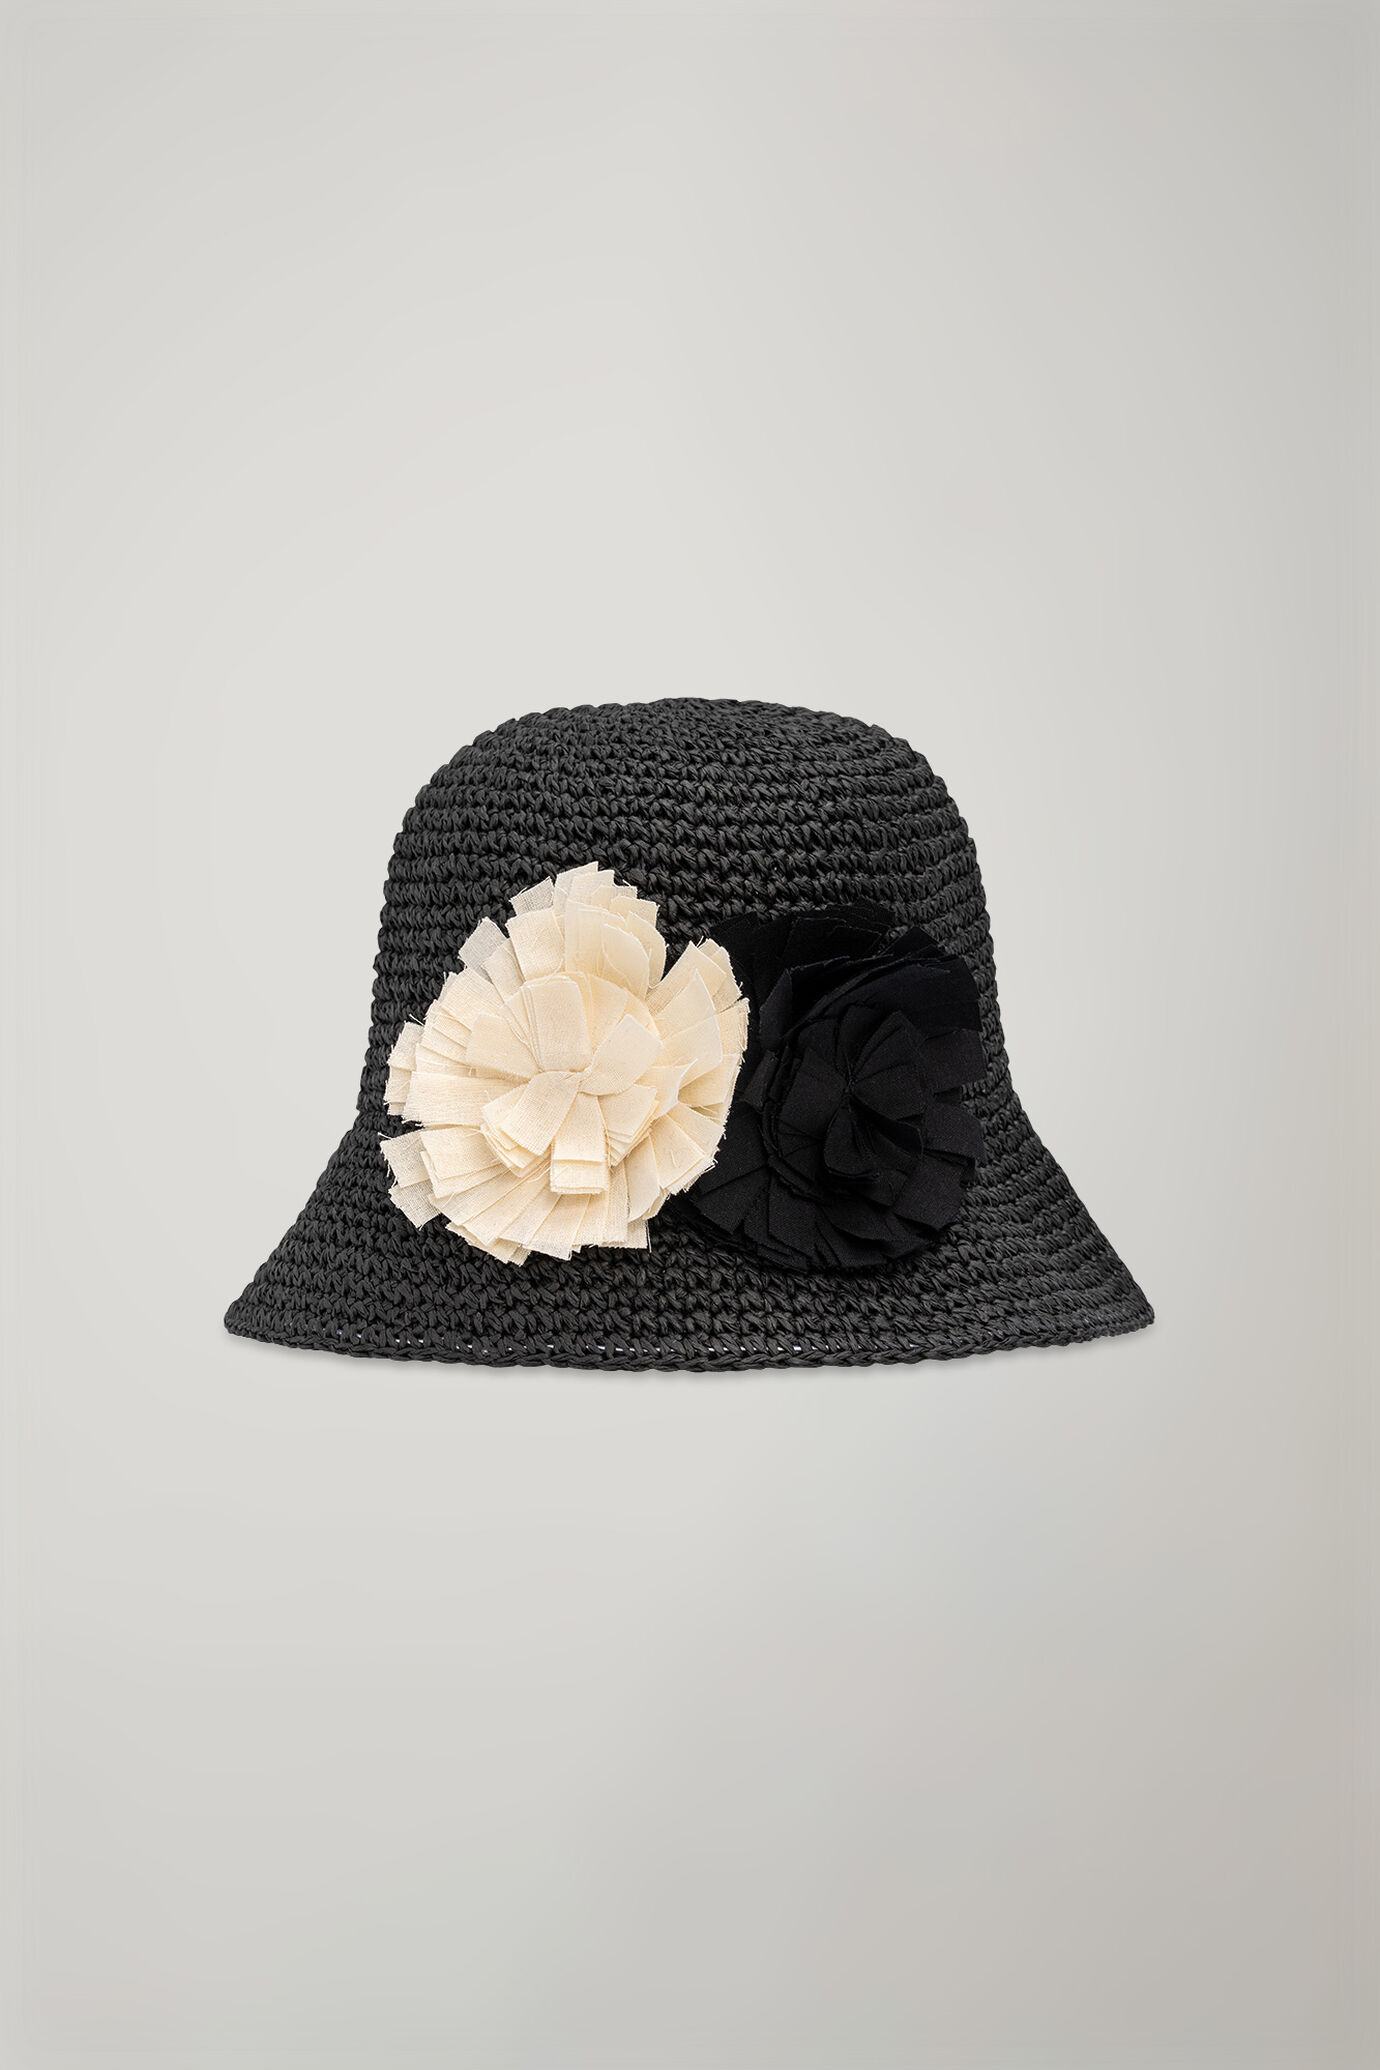 Women's hat in raffia